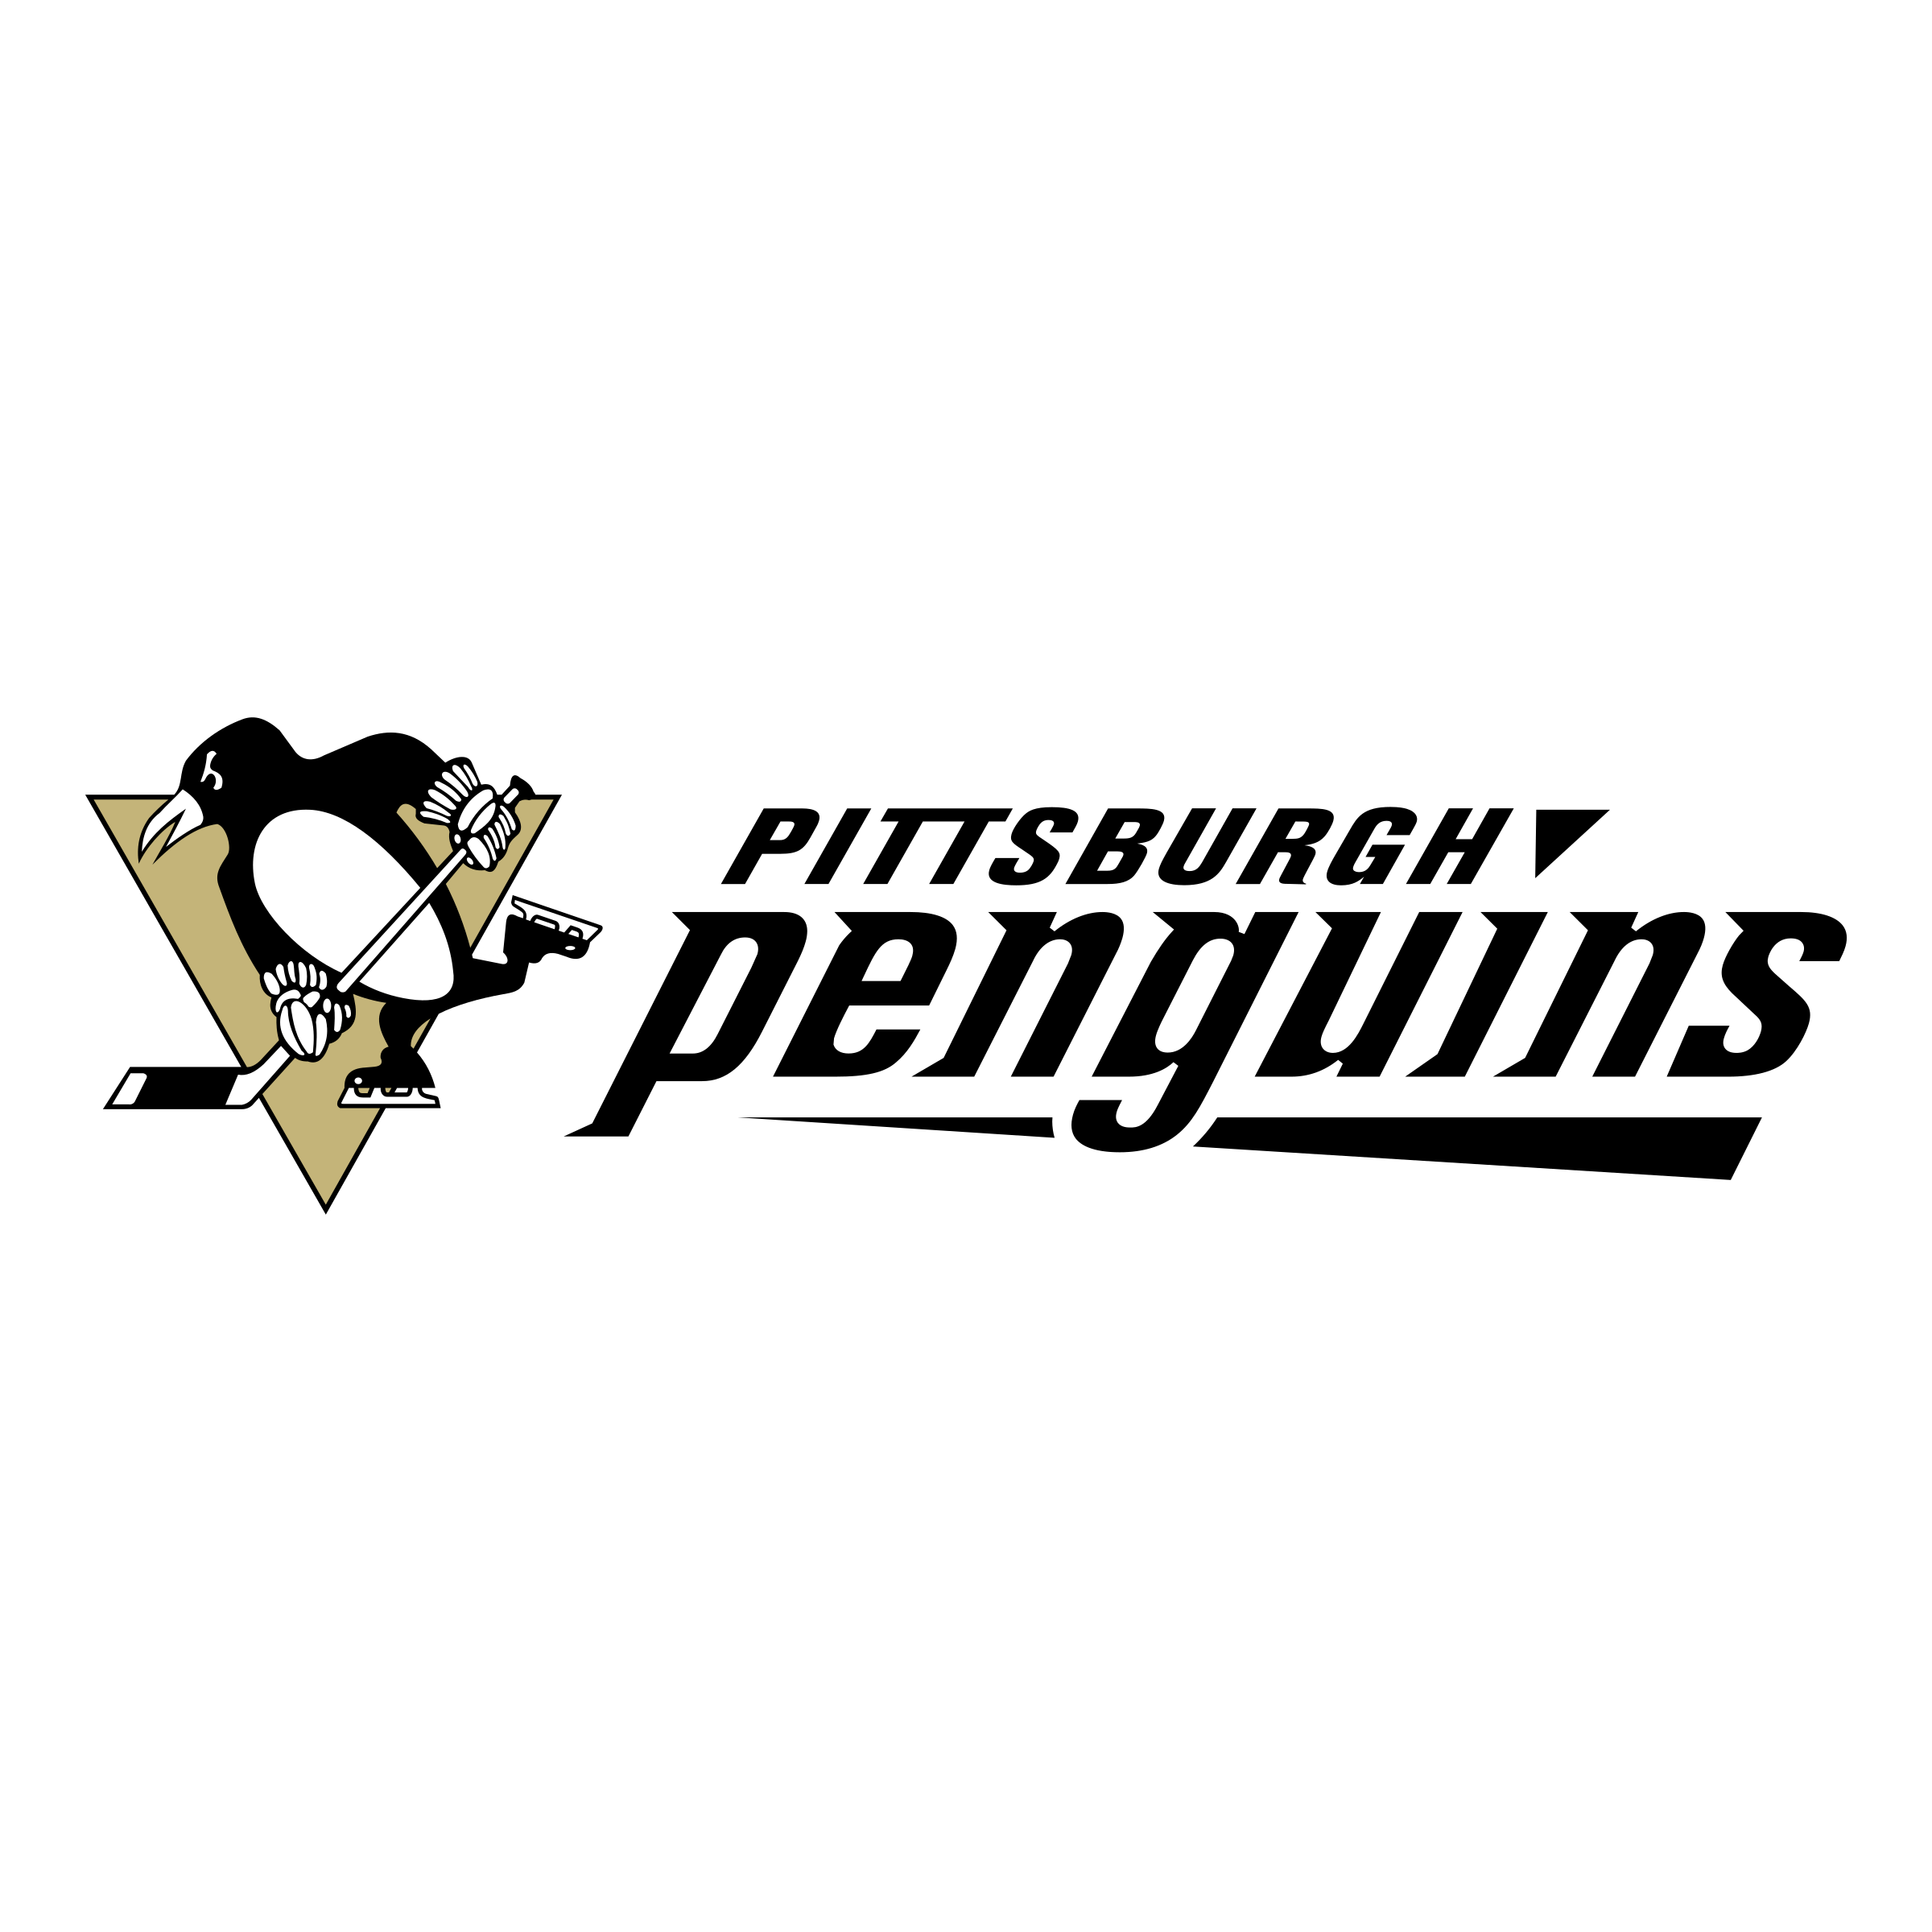 Black and White Penguins Logo - Pittsburgh Penguins Logo PNG Transparent & SVG Vector